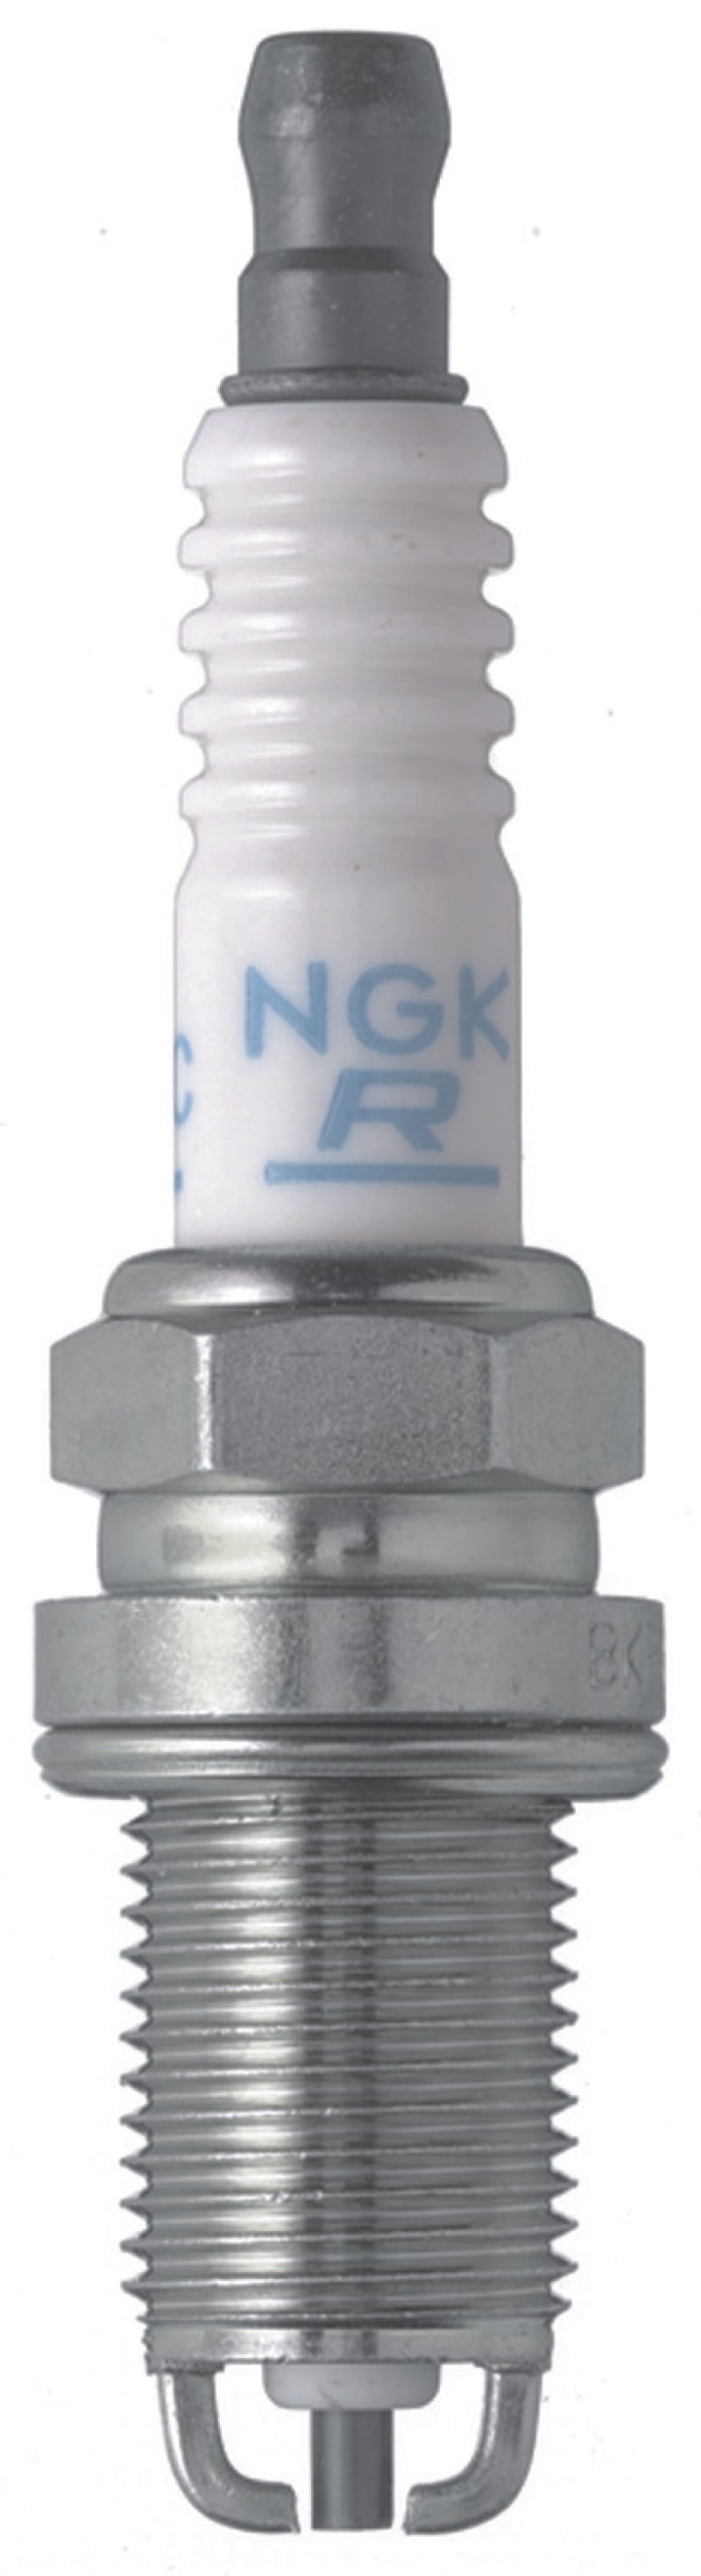 NGK Standard Spark Plug Box of 10 (BKR7EKC-N) -  Shop now at Performance Car Parts